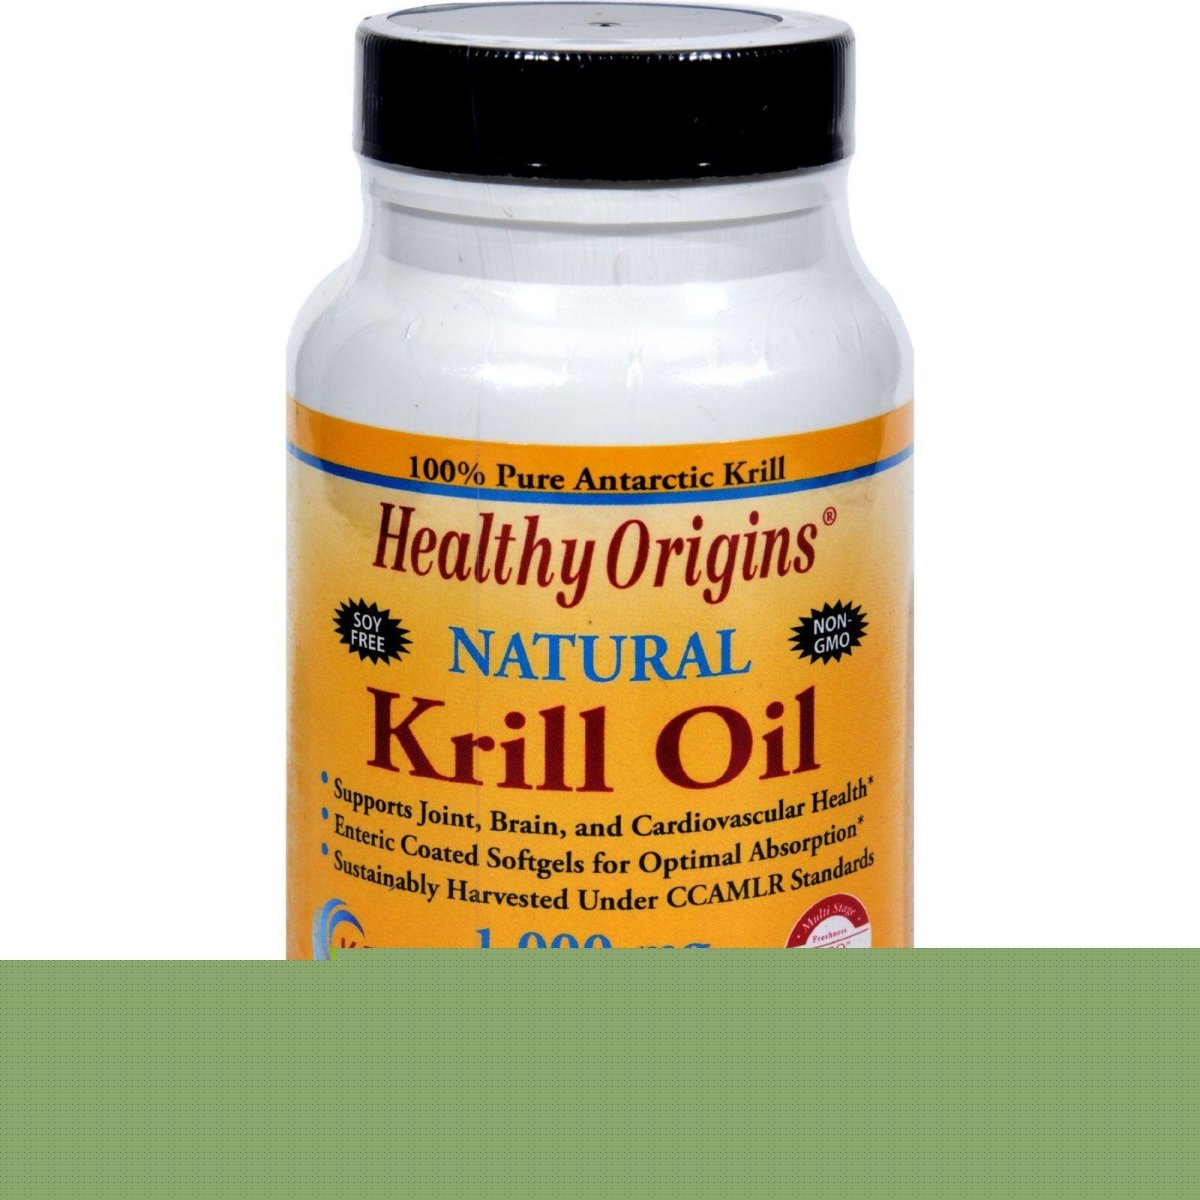 Hg1352384 1000 Mg Krill Oil - 60 Softgels